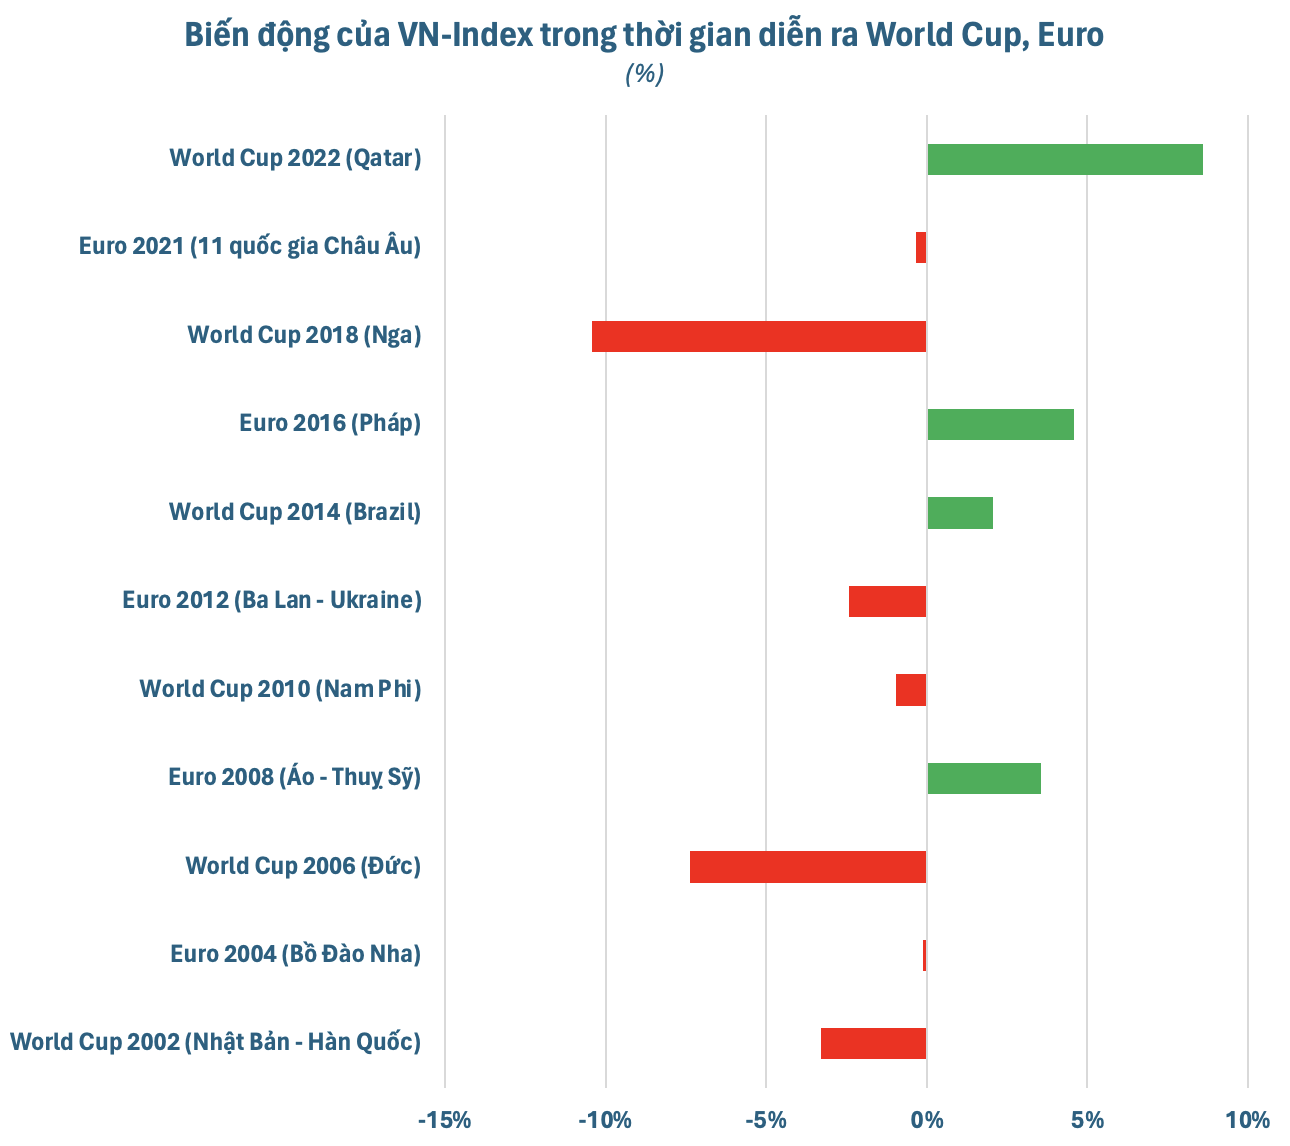 Ngỡ ngàng "tỷ số đối đầu" giữa chứng khoán Việt Nam và các kỳ Euro, World Cup